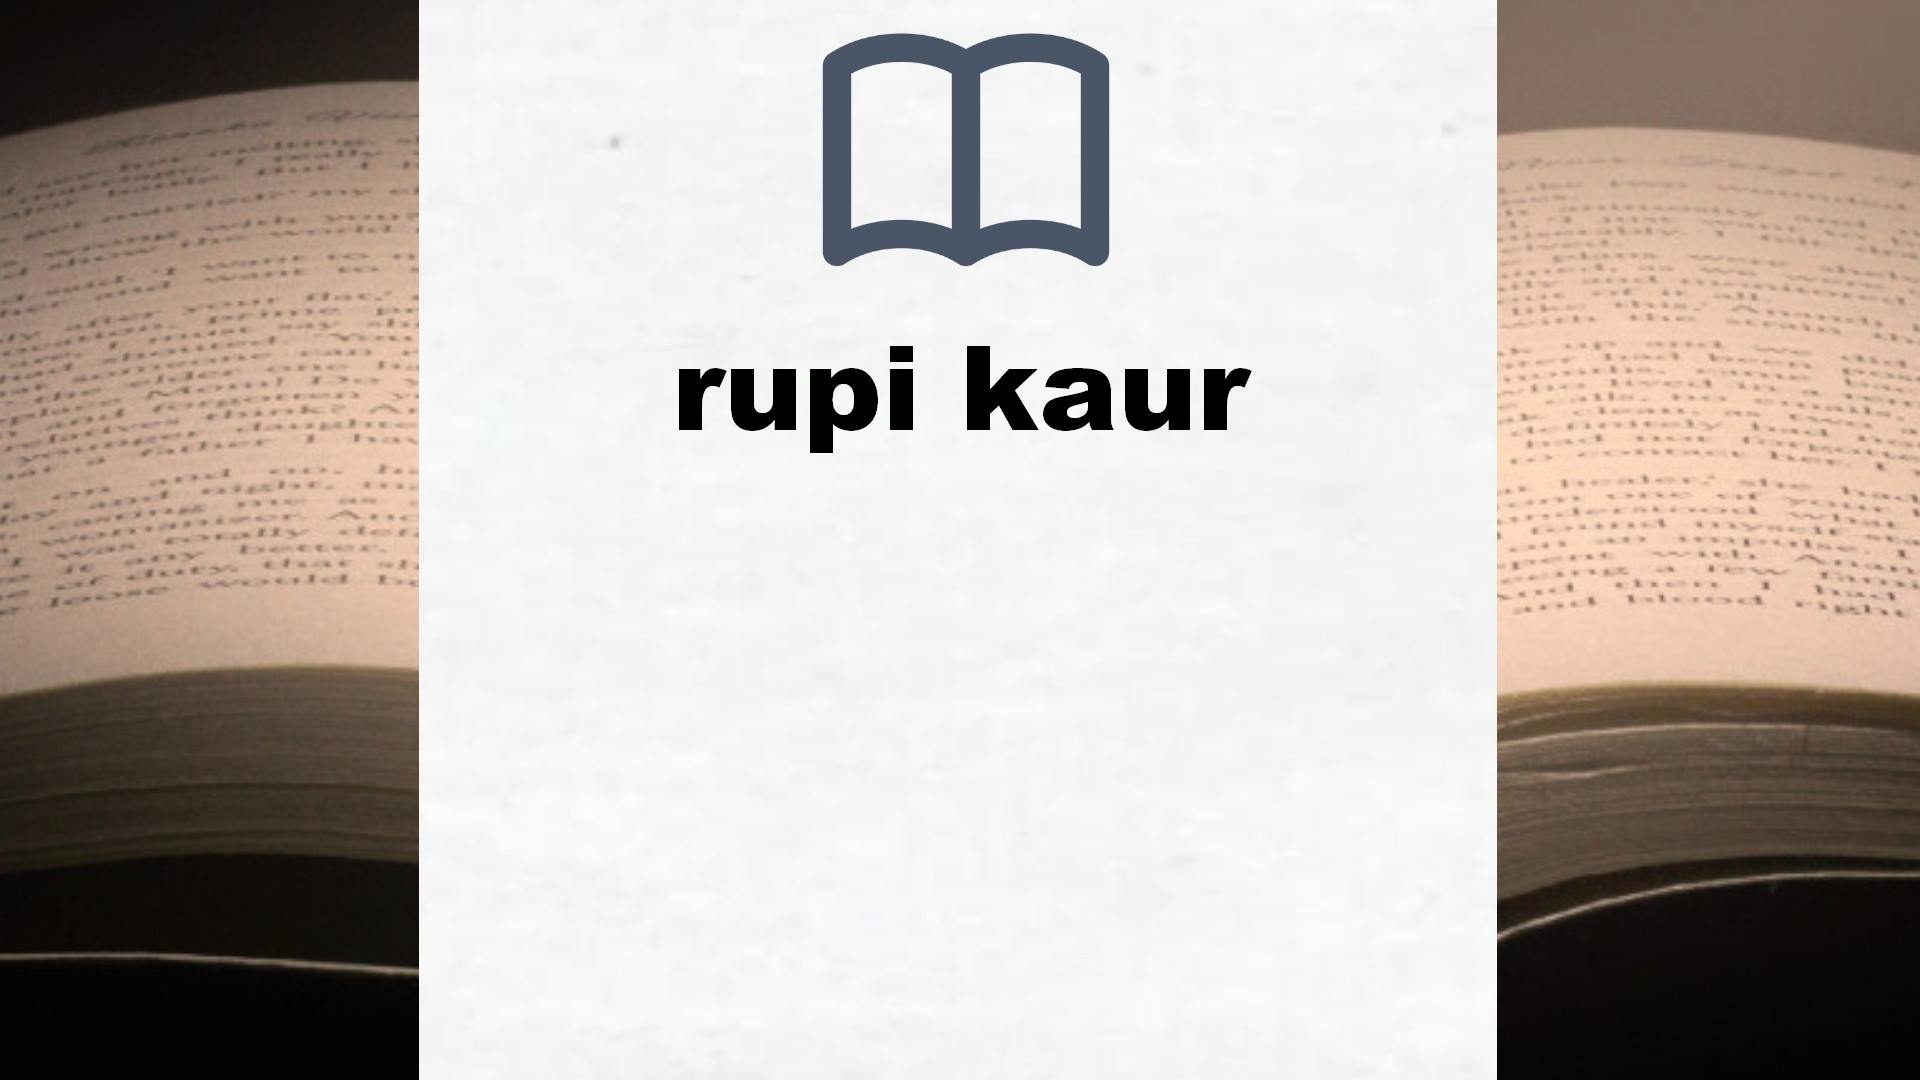 Libros rupi kaur